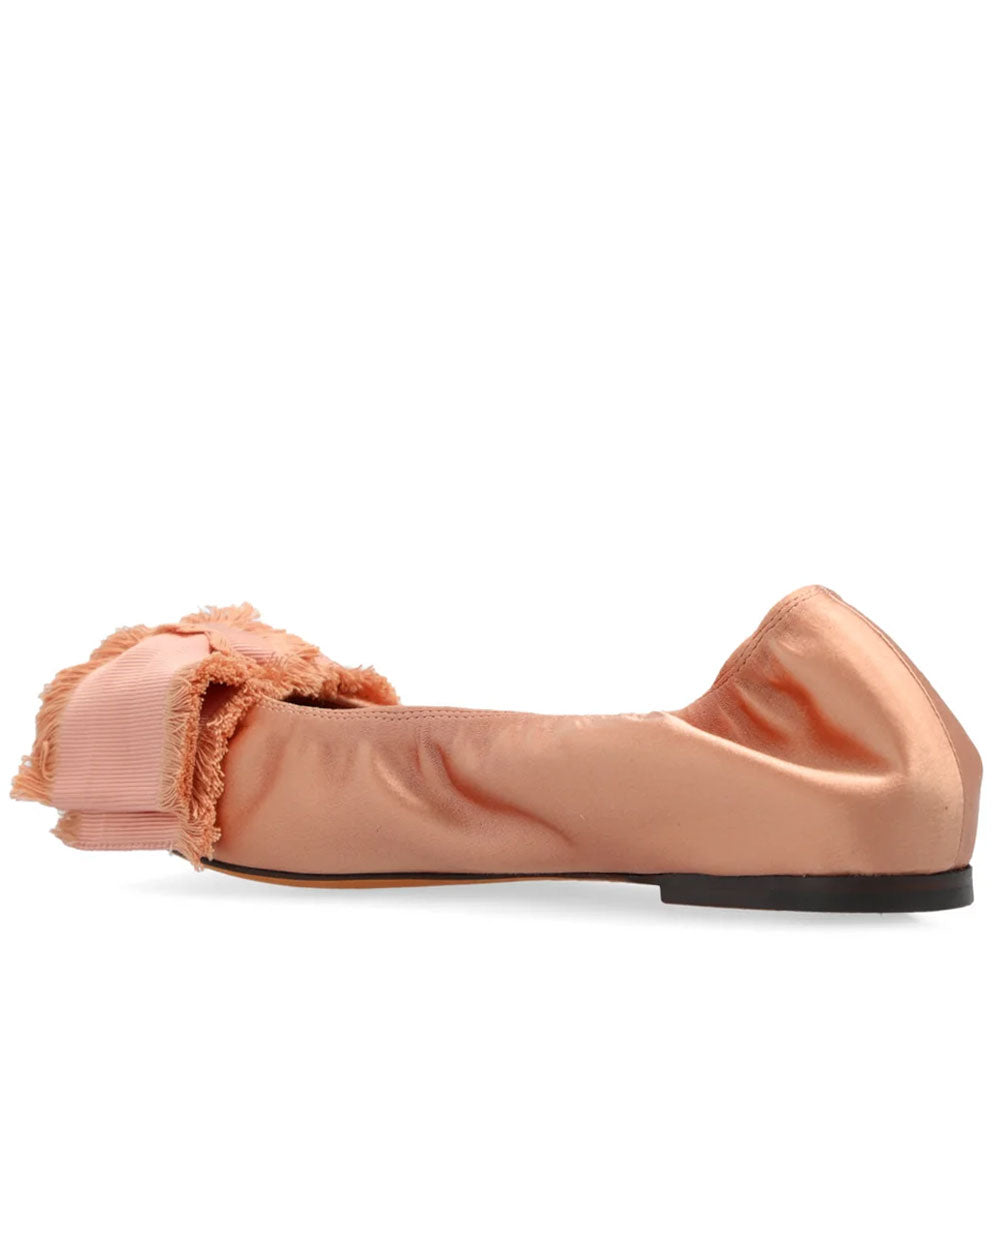 Bow Detail Ballet Flat in Blush